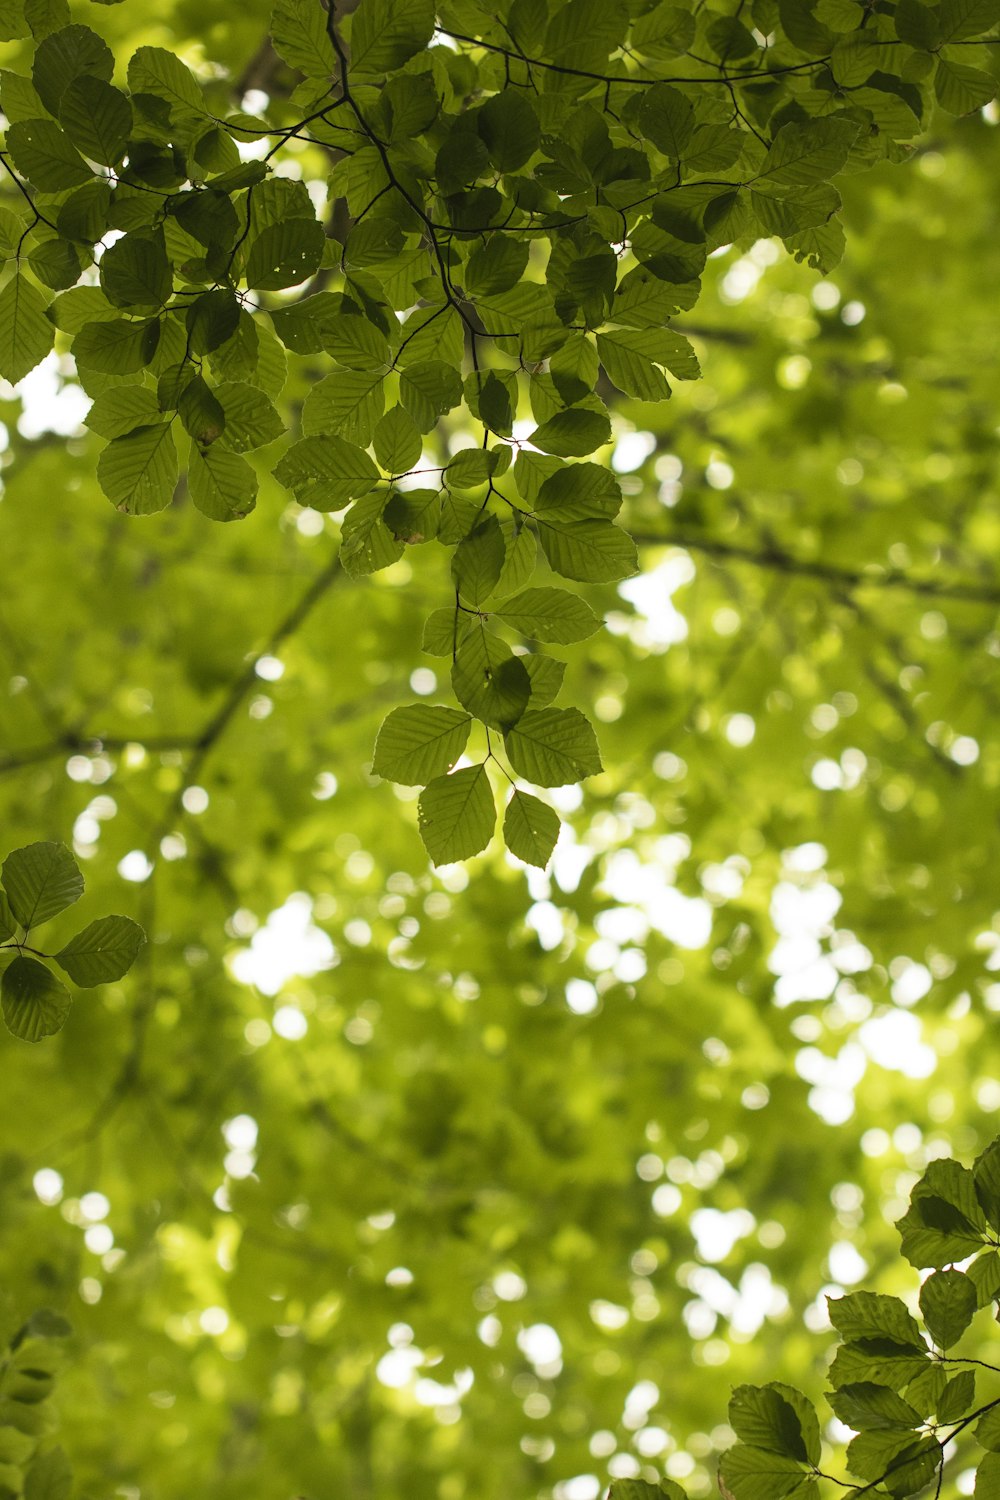 Las hojas verdes cuelgan de las ramas de un árbol